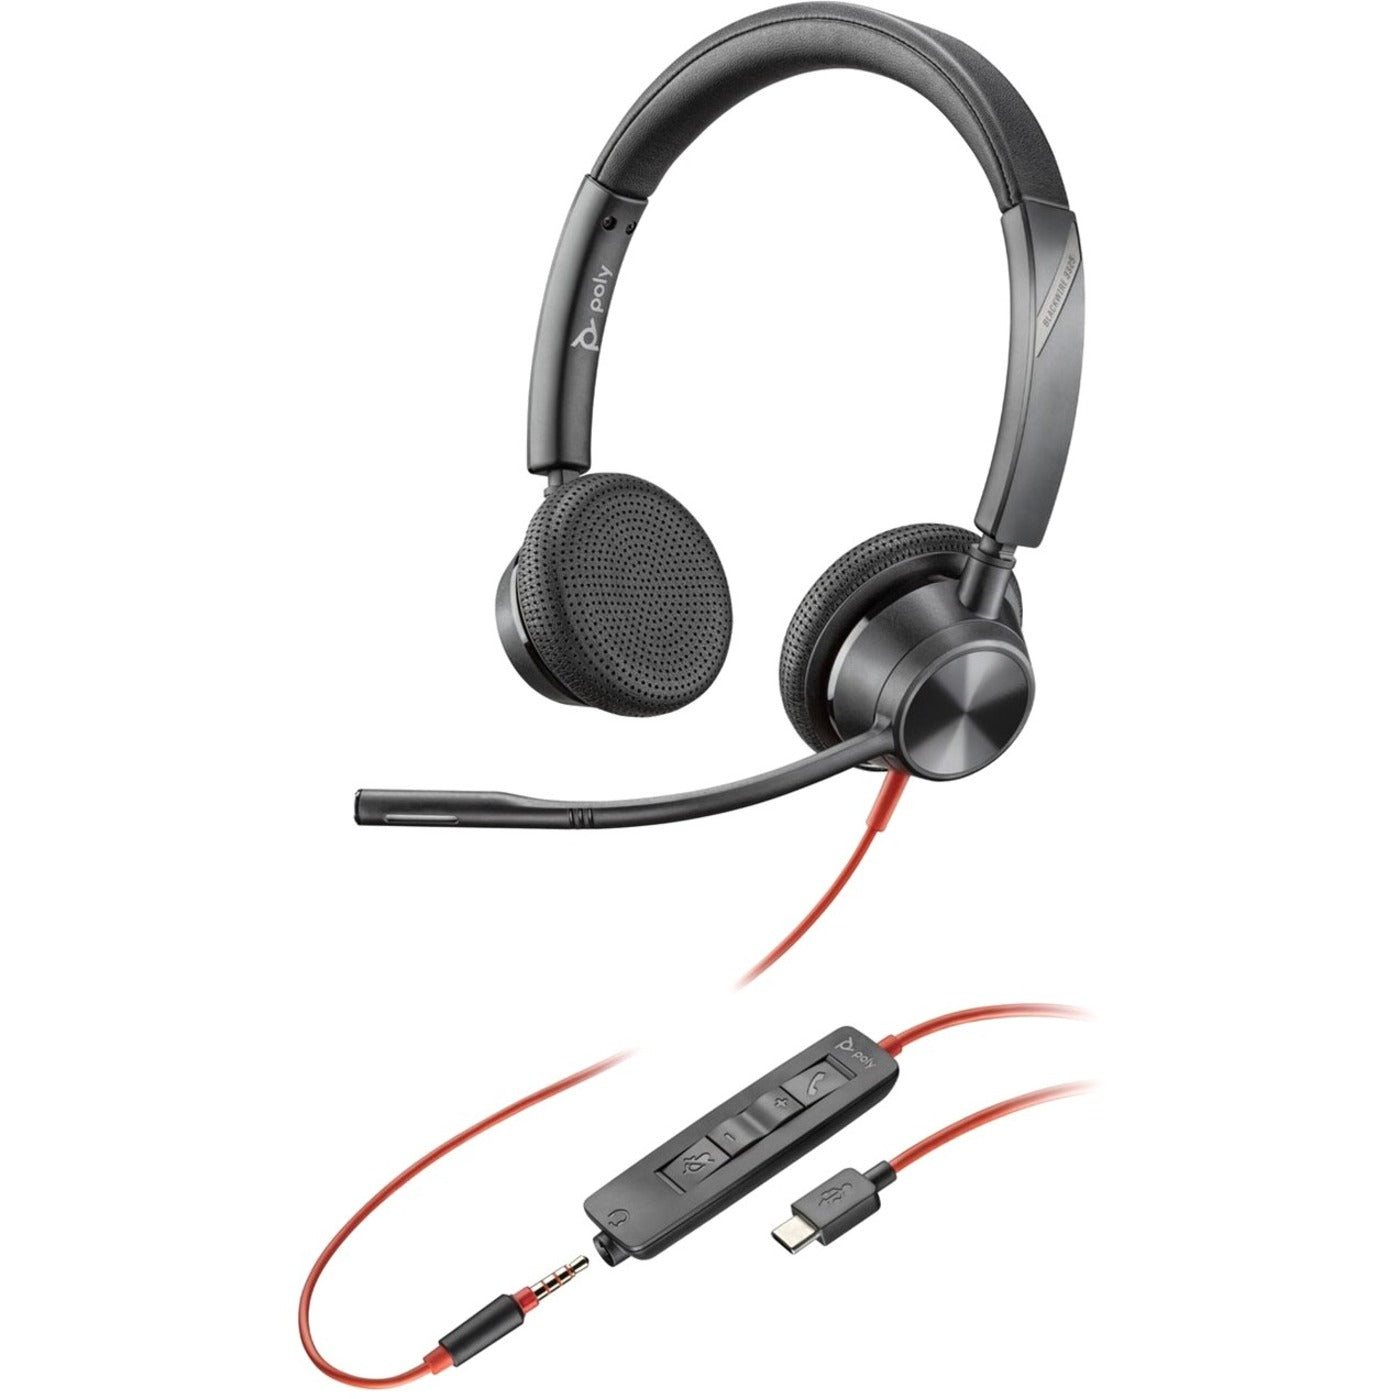 Casque filaire Poly 76J23AA Blackwire 3325 certifié Microsoft Teams USB-C casque sur-oreille binaural avec microphone à perche flexible